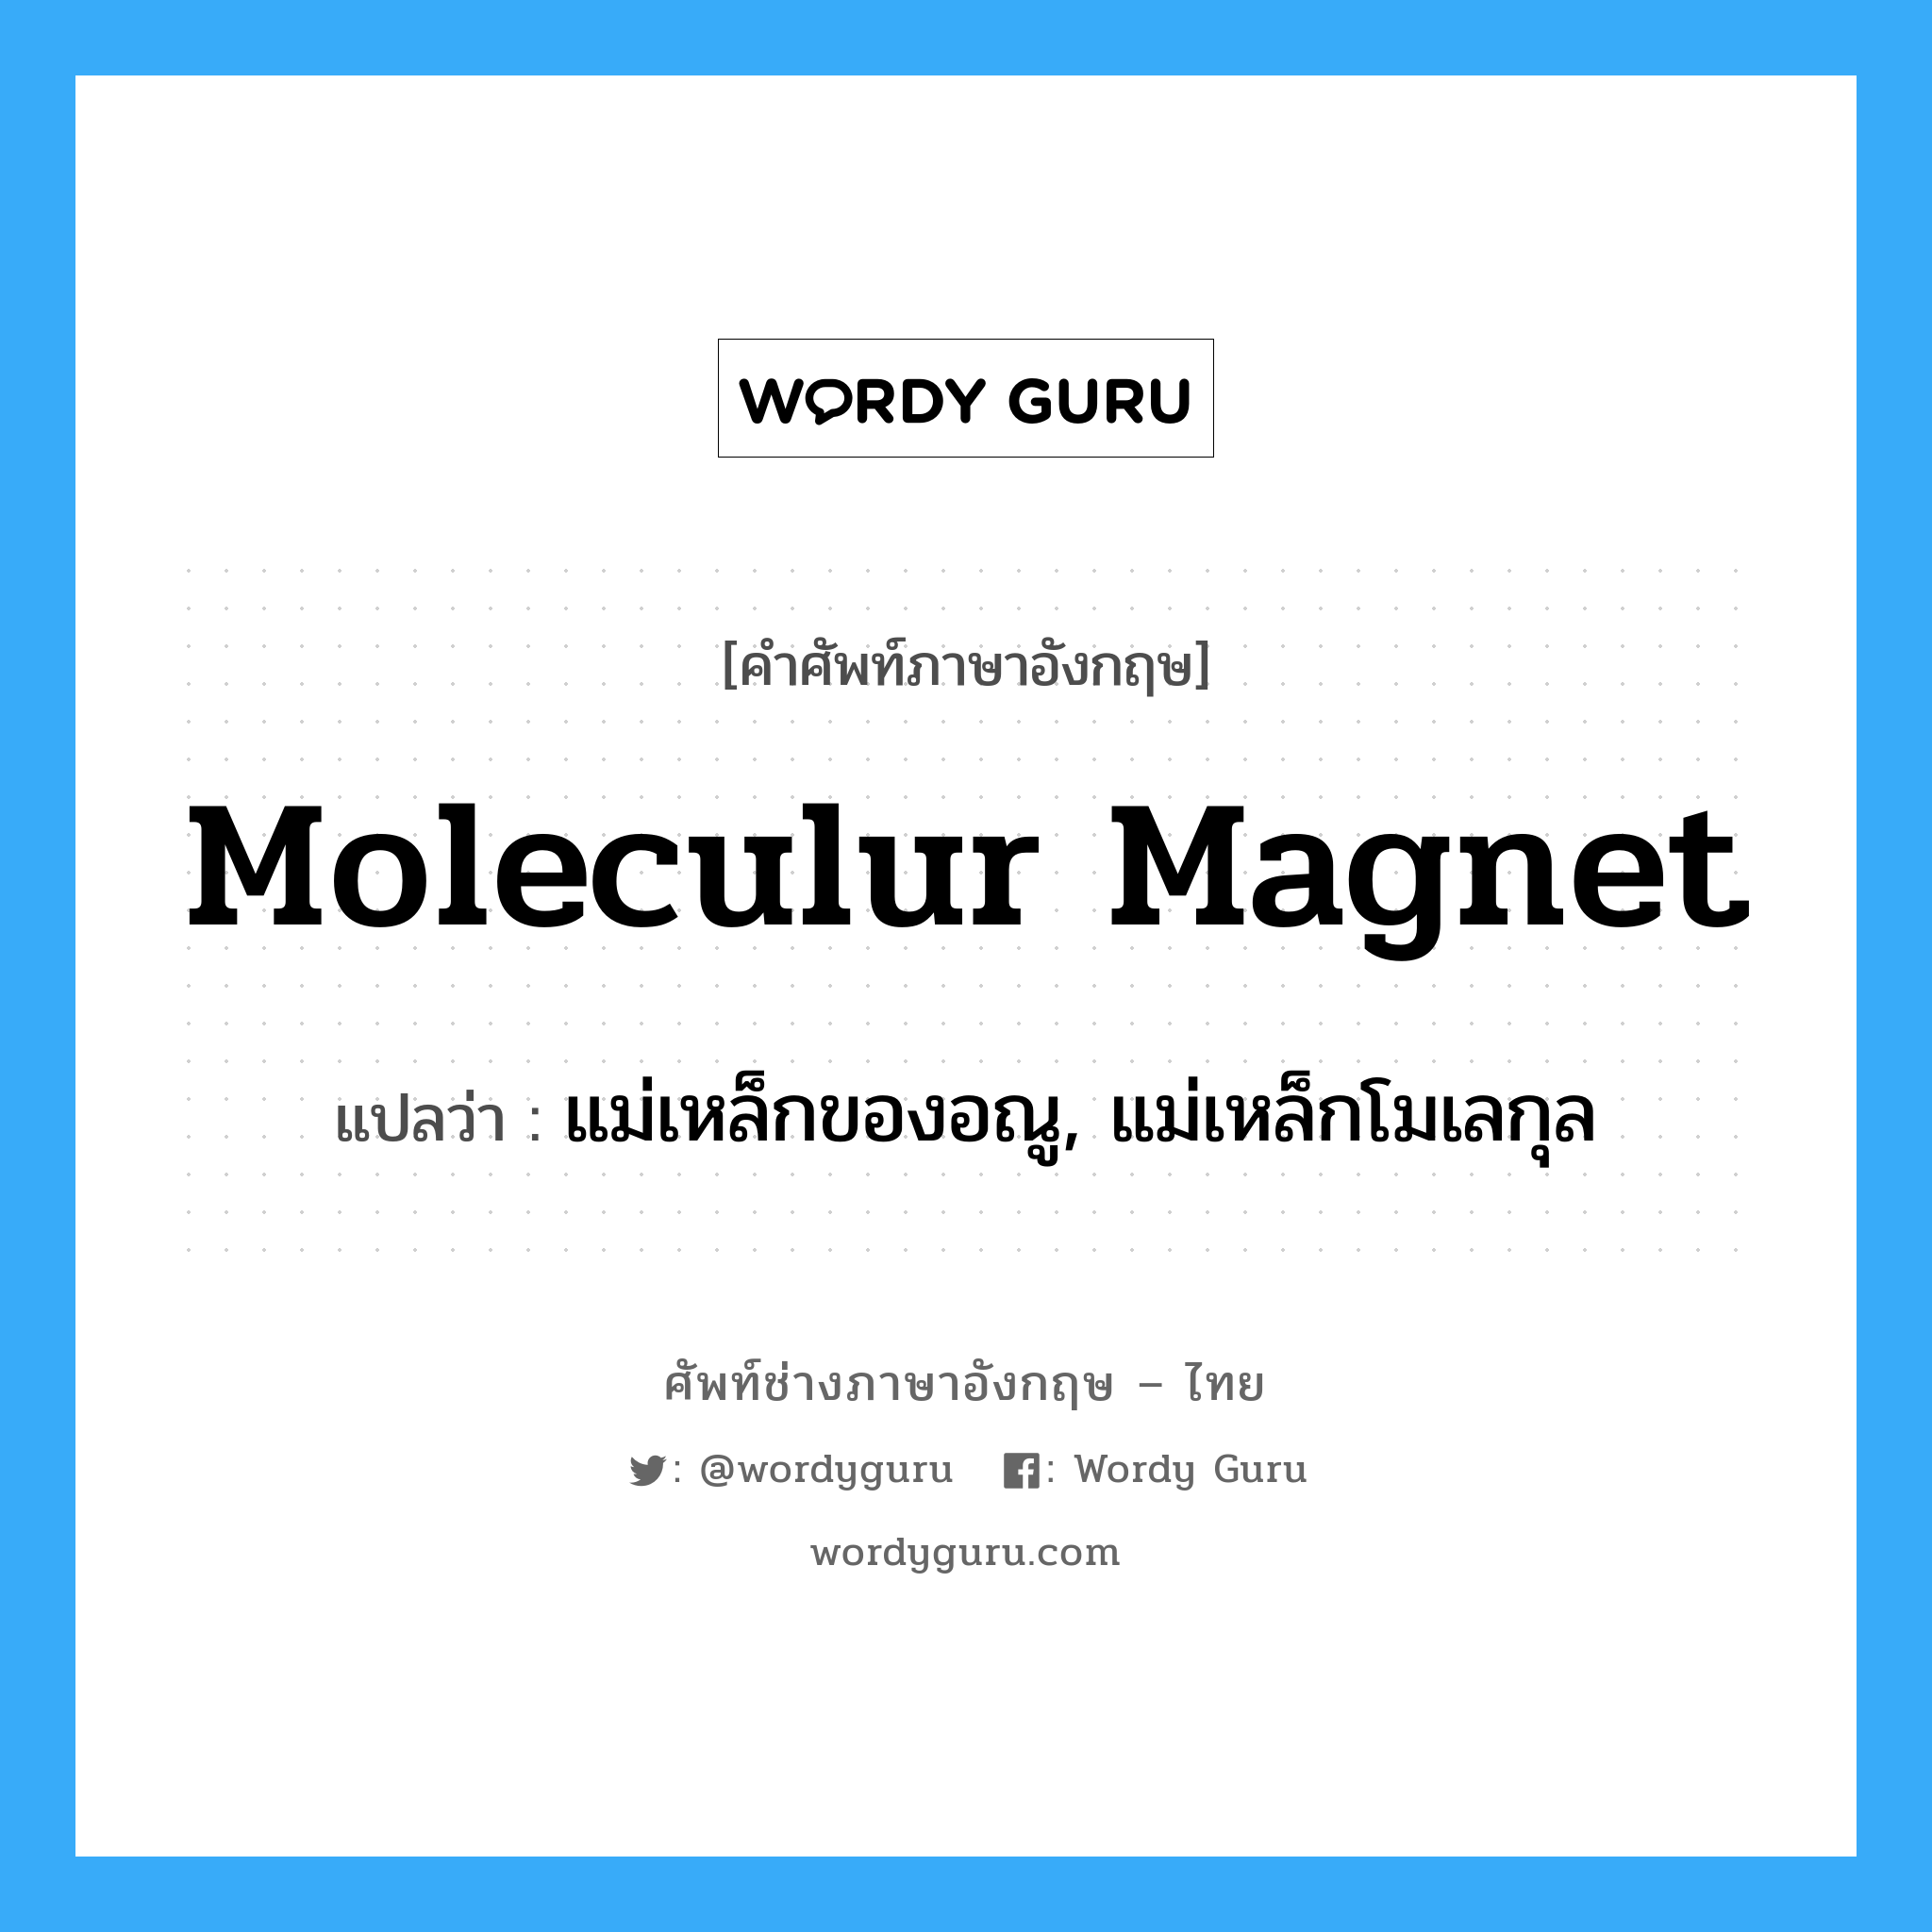 moleculur magnet แปลว่า?, คำศัพท์ช่างภาษาอังกฤษ - ไทย moleculur magnet คำศัพท์ภาษาอังกฤษ moleculur magnet แปลว่า แม่เหล็กของอณู, แม่เหล็กโมเลกุล